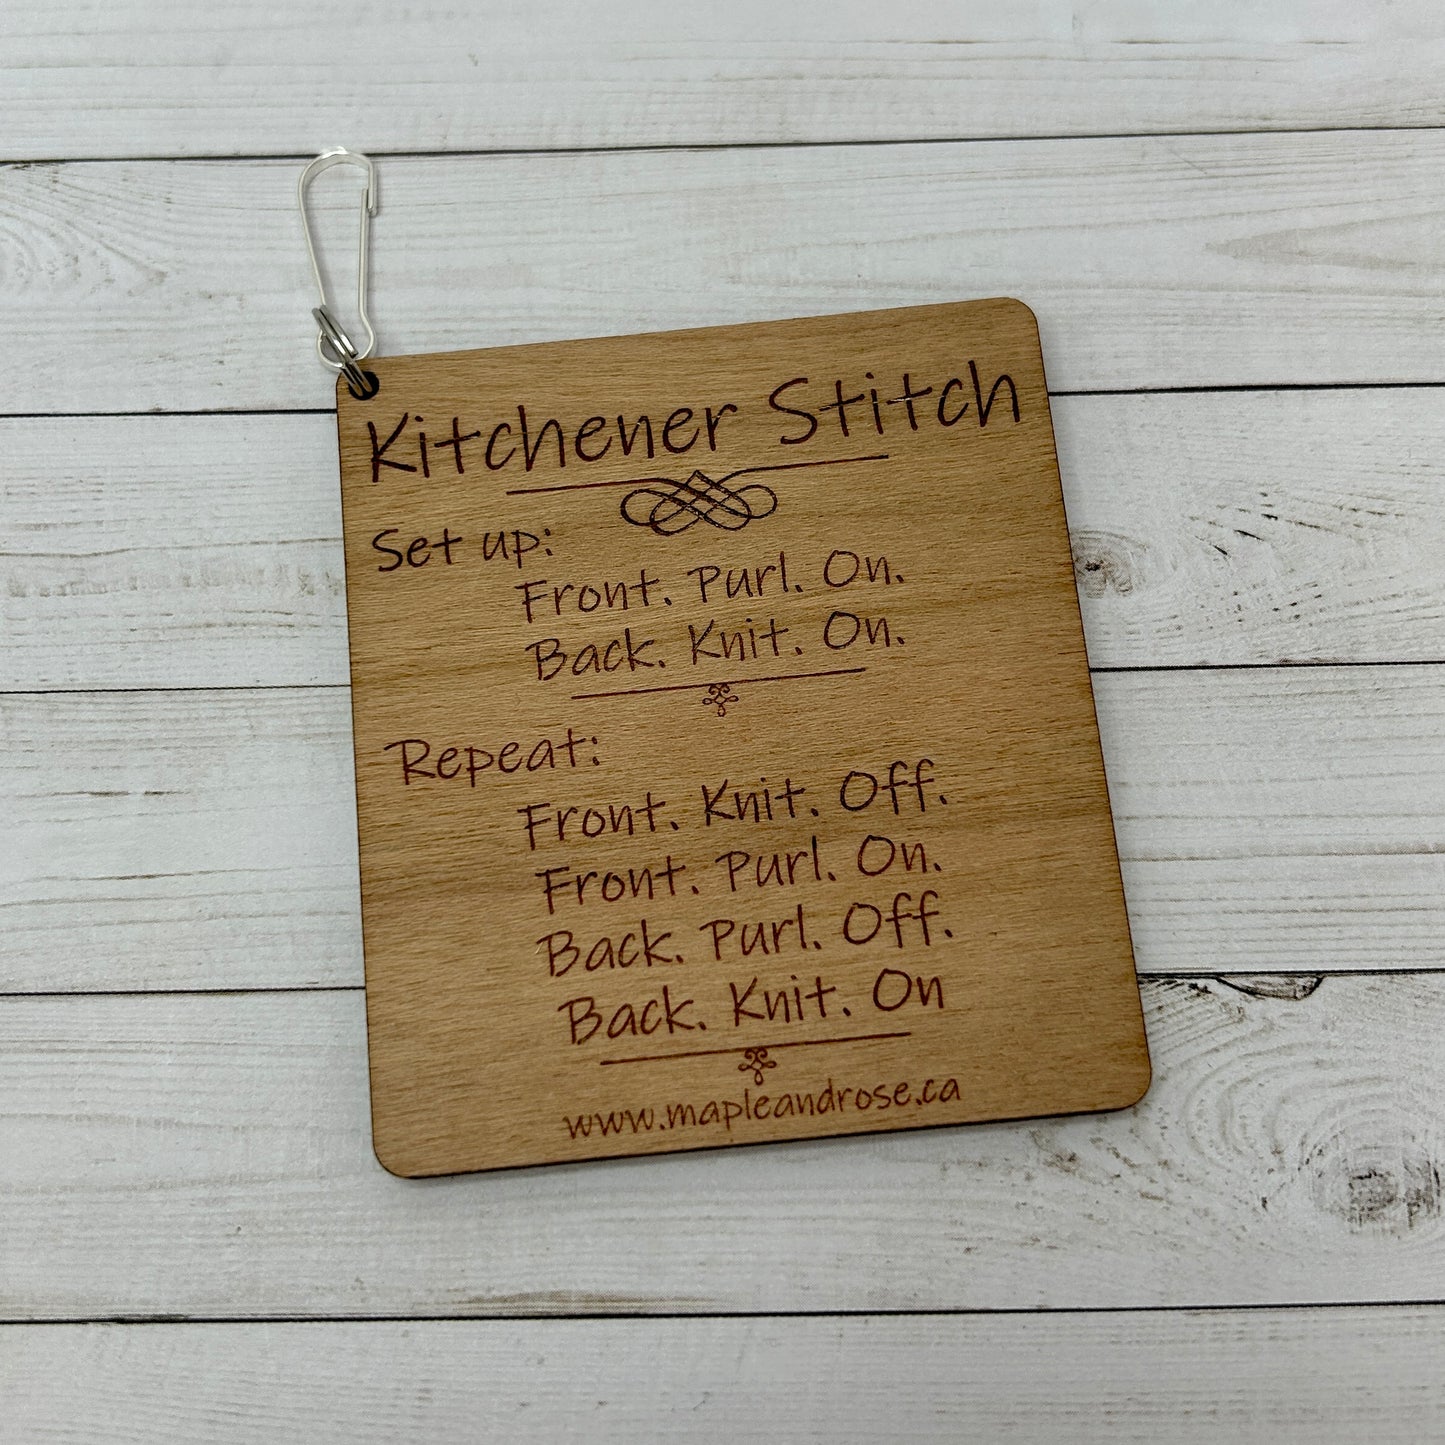 Kitchener Stitch Guide